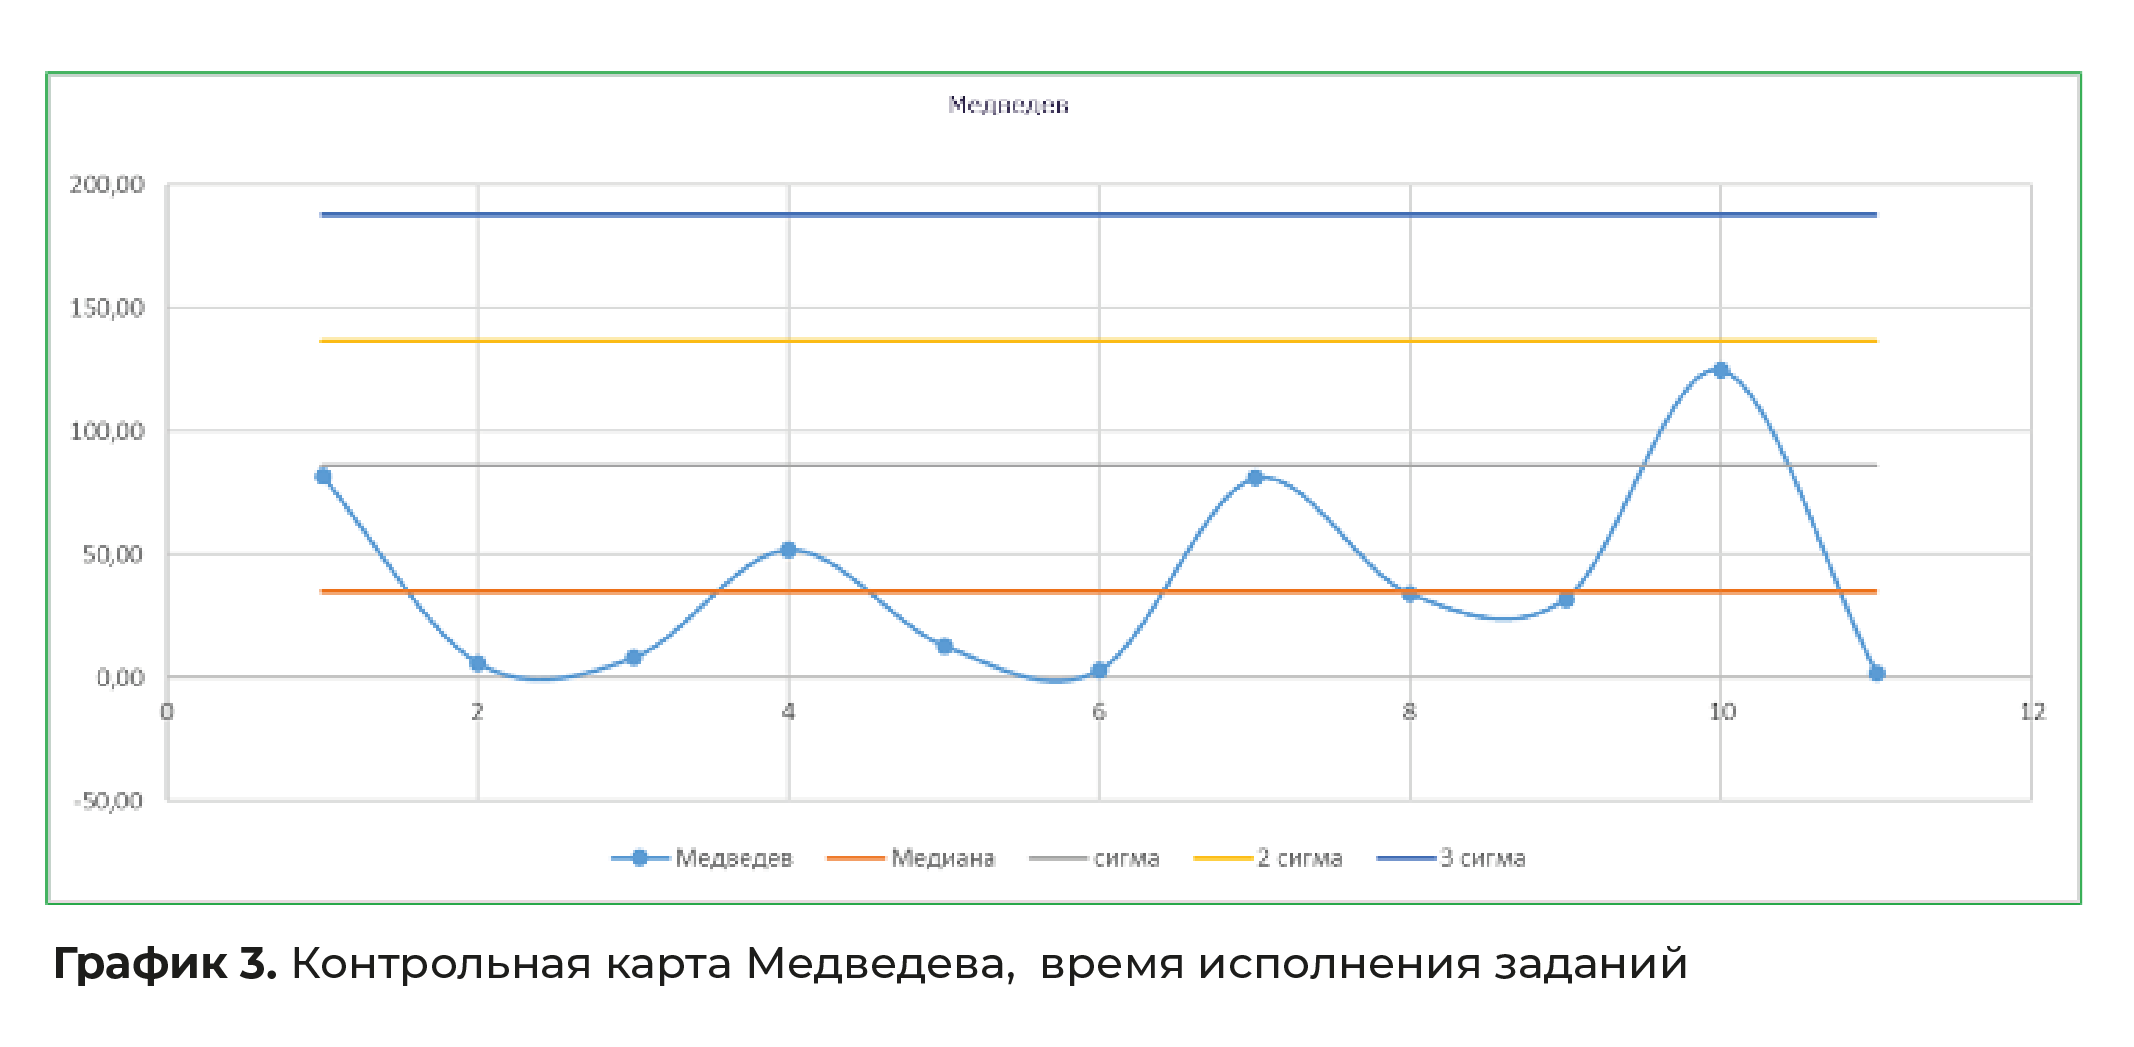 Контрольная карта Медведева, время исполнения заданий